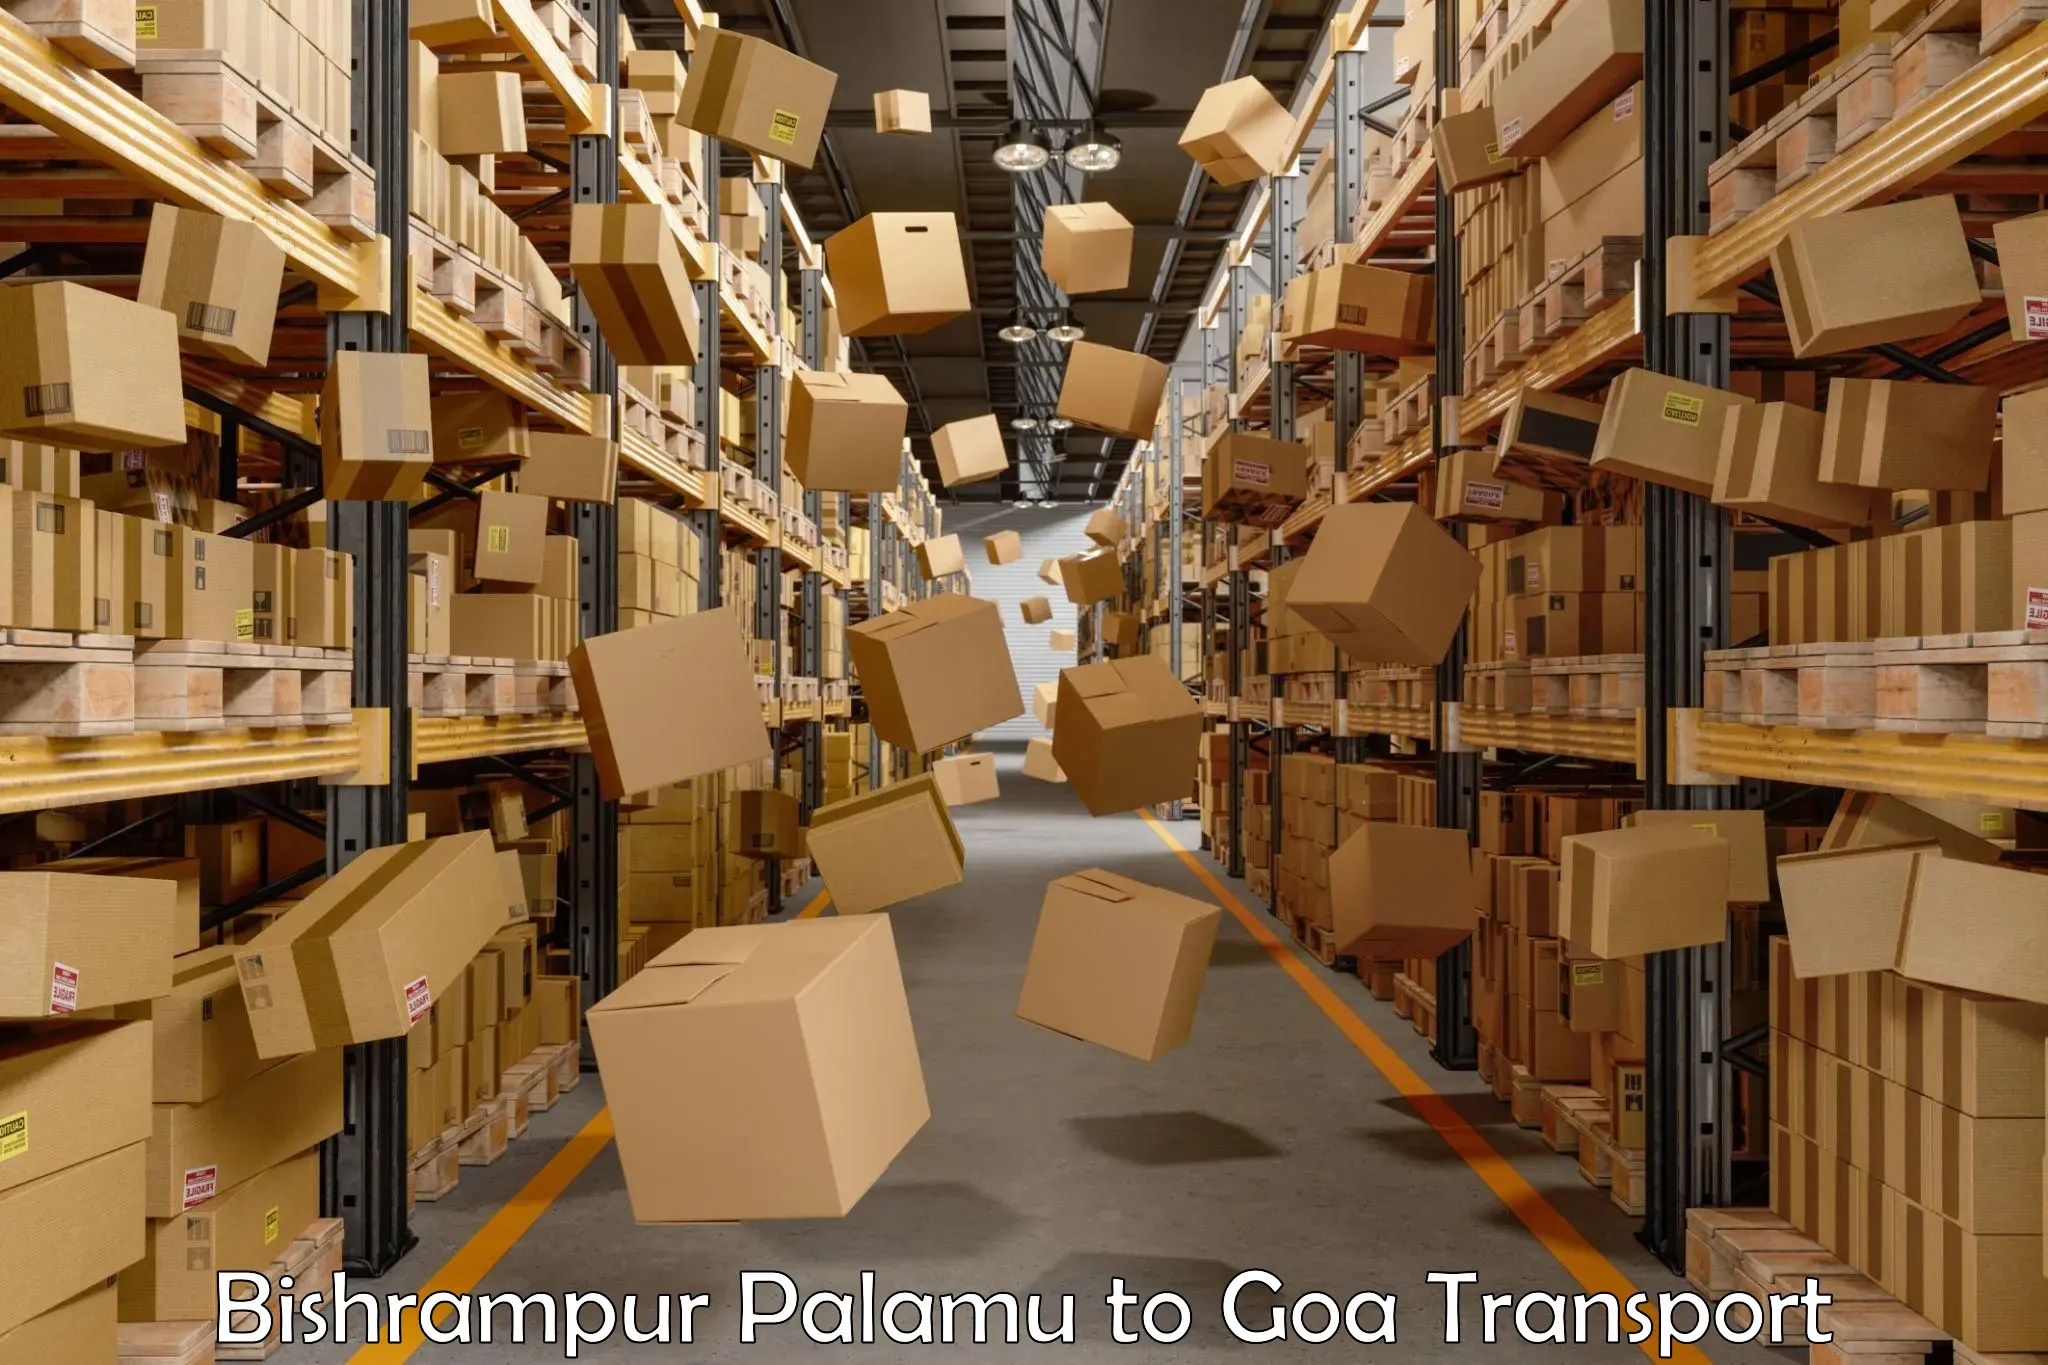 Road transport online services Bishrampur Palamu to Panaji